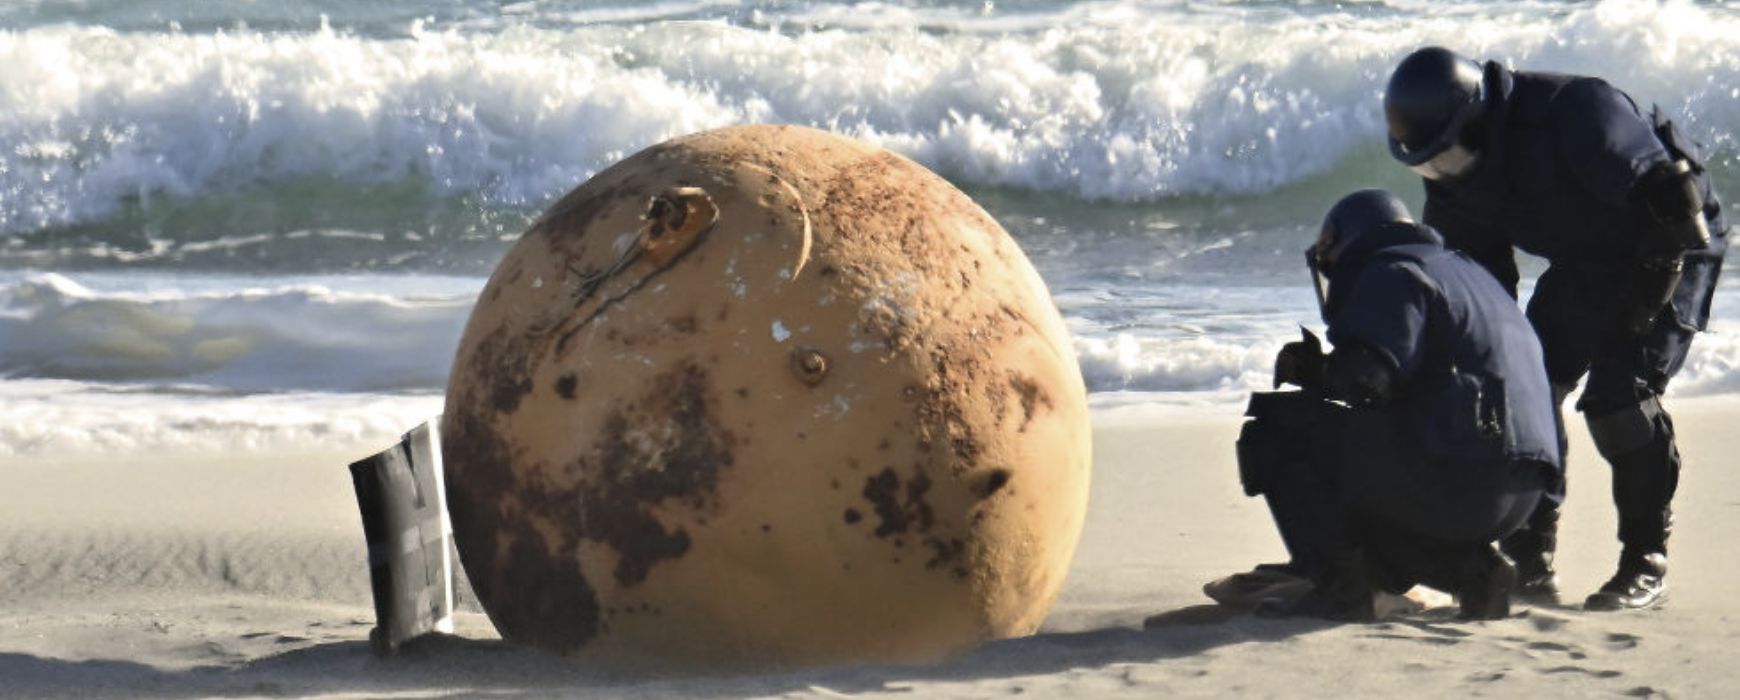 Λύθηκε το μυστήριο με τη σιδερένια μπάλα σε ακτή της Ιαπωνίας – Πρόκειται για κάτι πολύ συνηθισμένο (Videos)